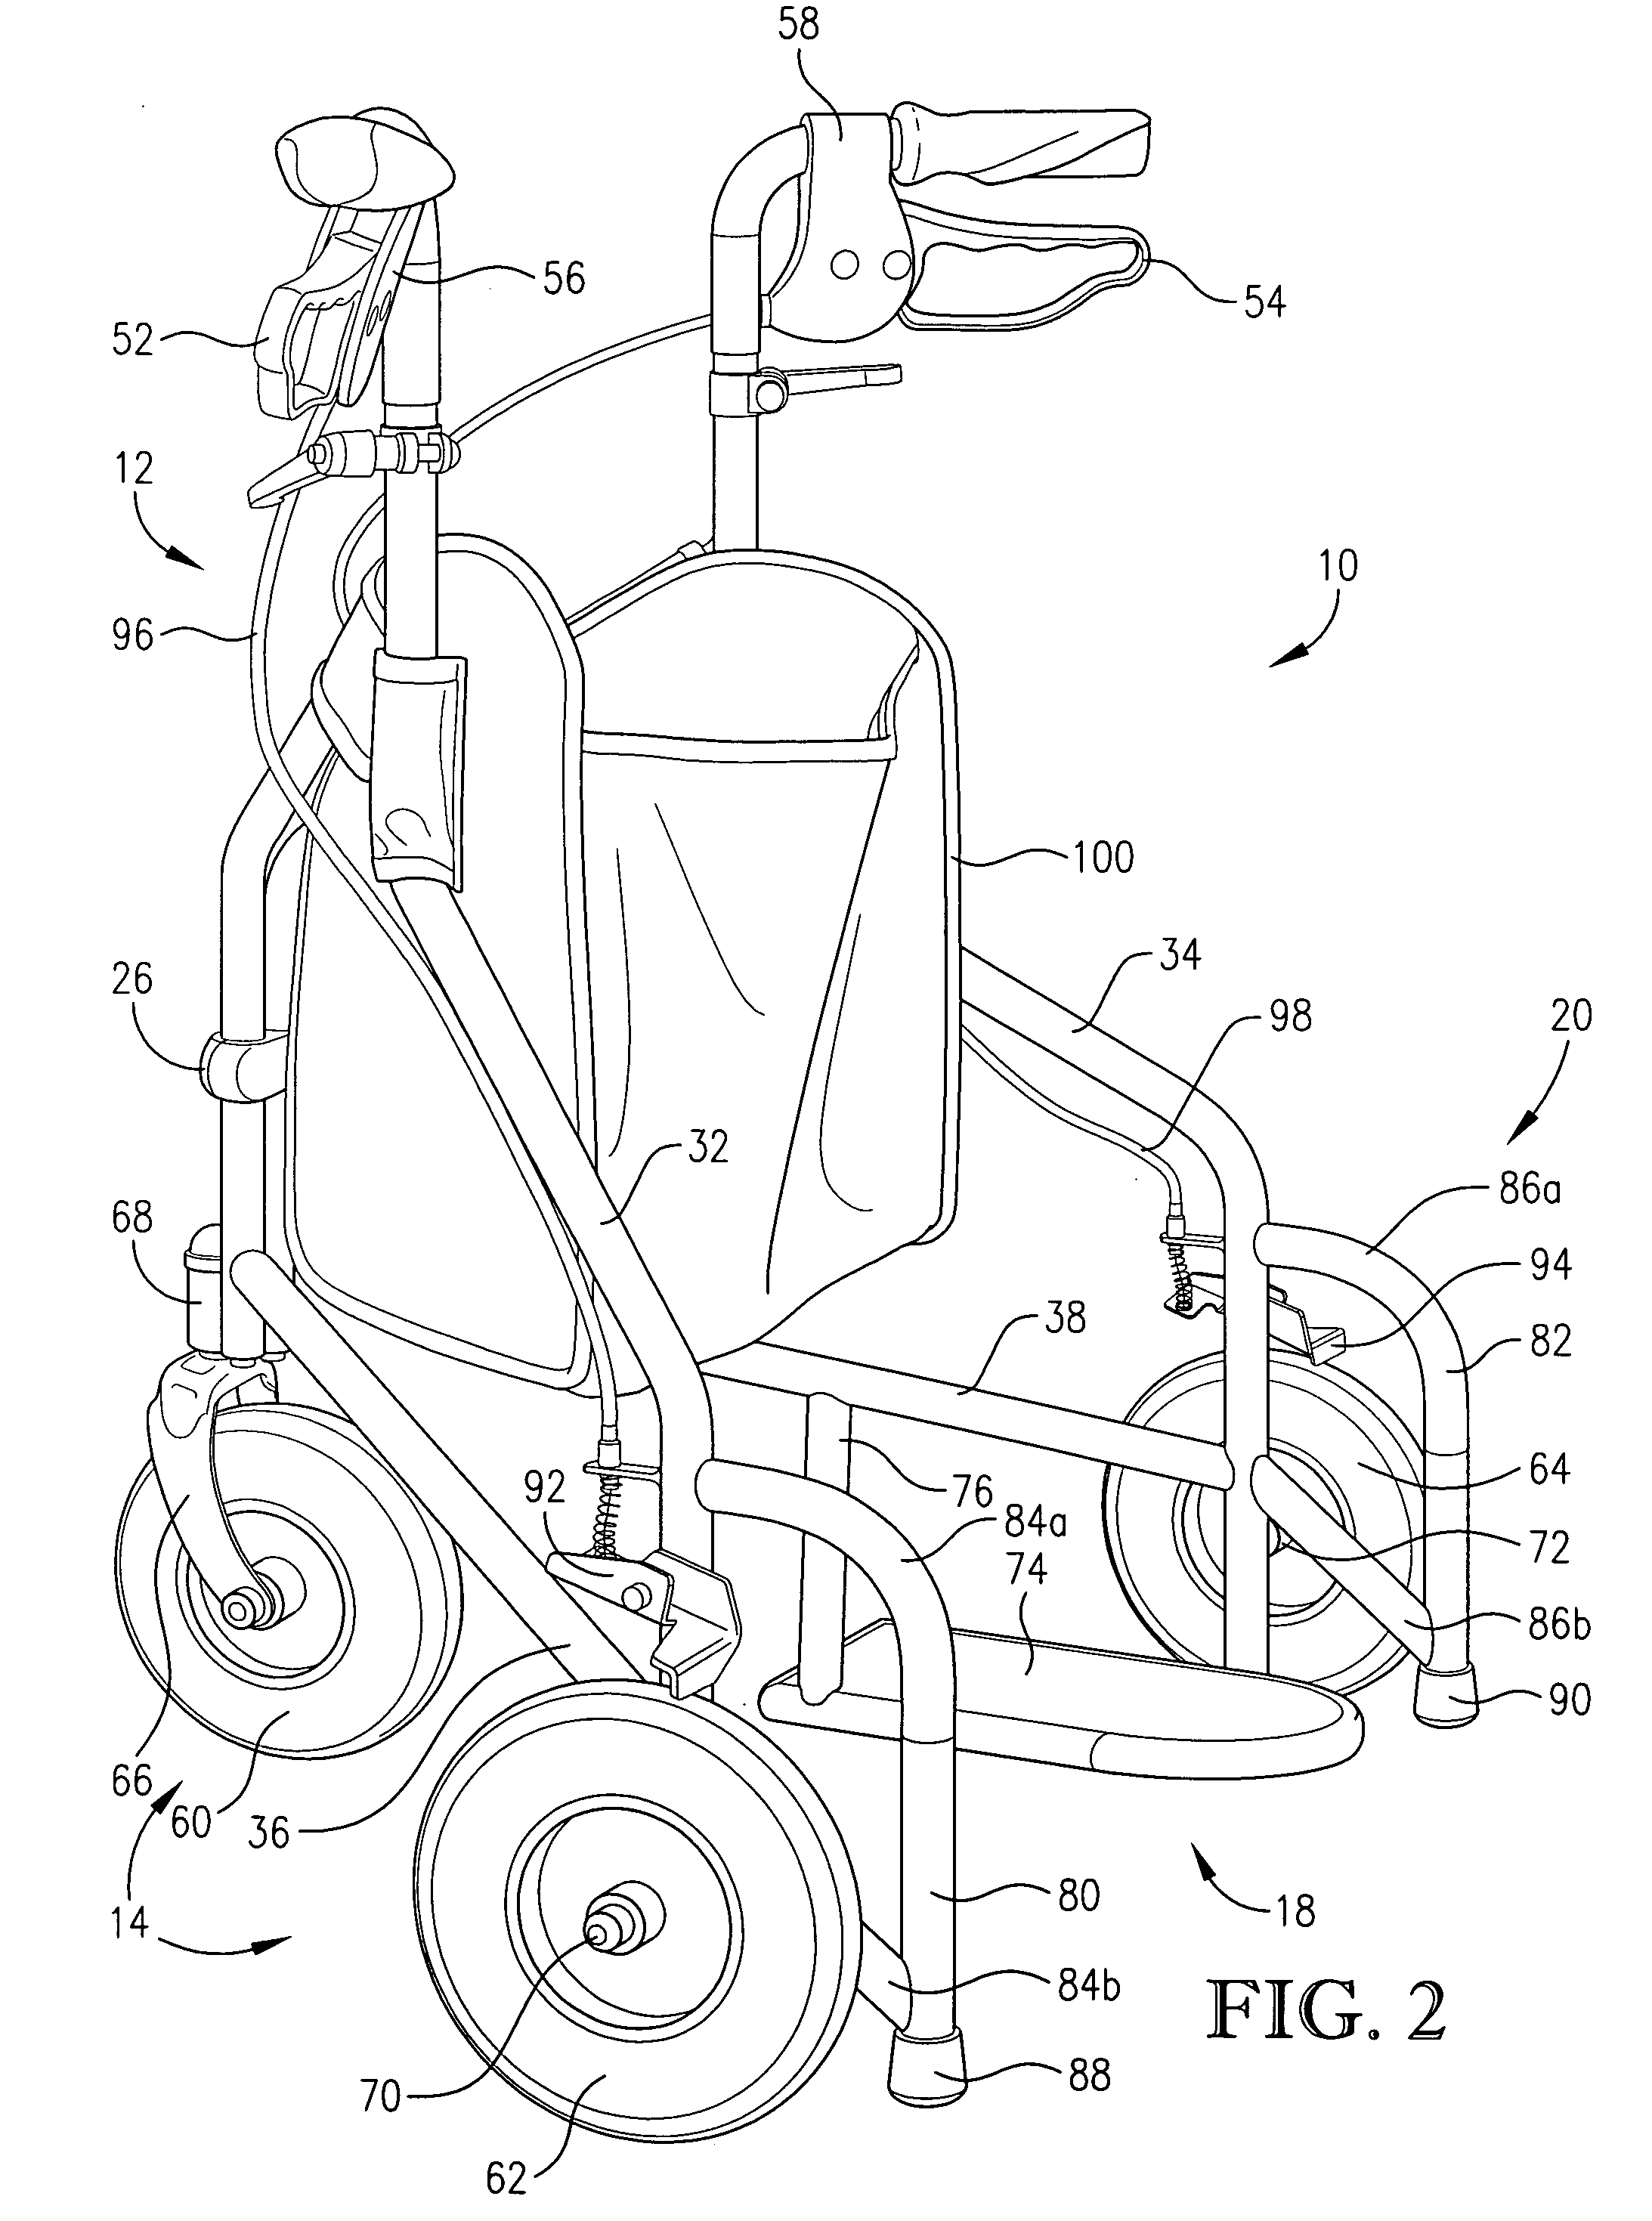 Walker apparatus